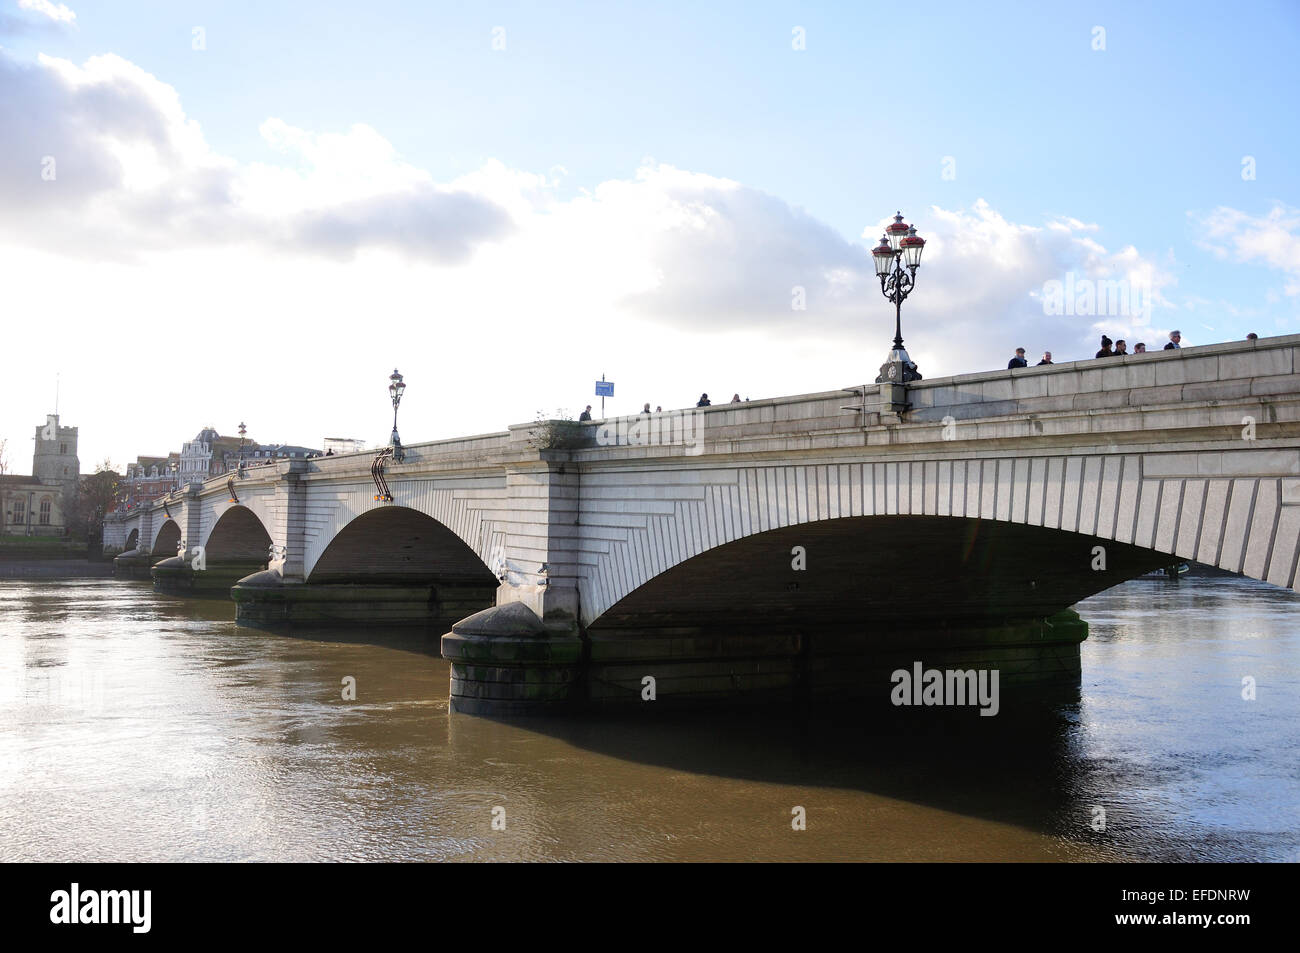 Putney Bridge et la Tamise depuis le bord de la rivière Willow Bank, Fulham, London Borough of Hammersmith and Fulham, Greater London, Angleterre, Royaume-Uni Banque D'Images